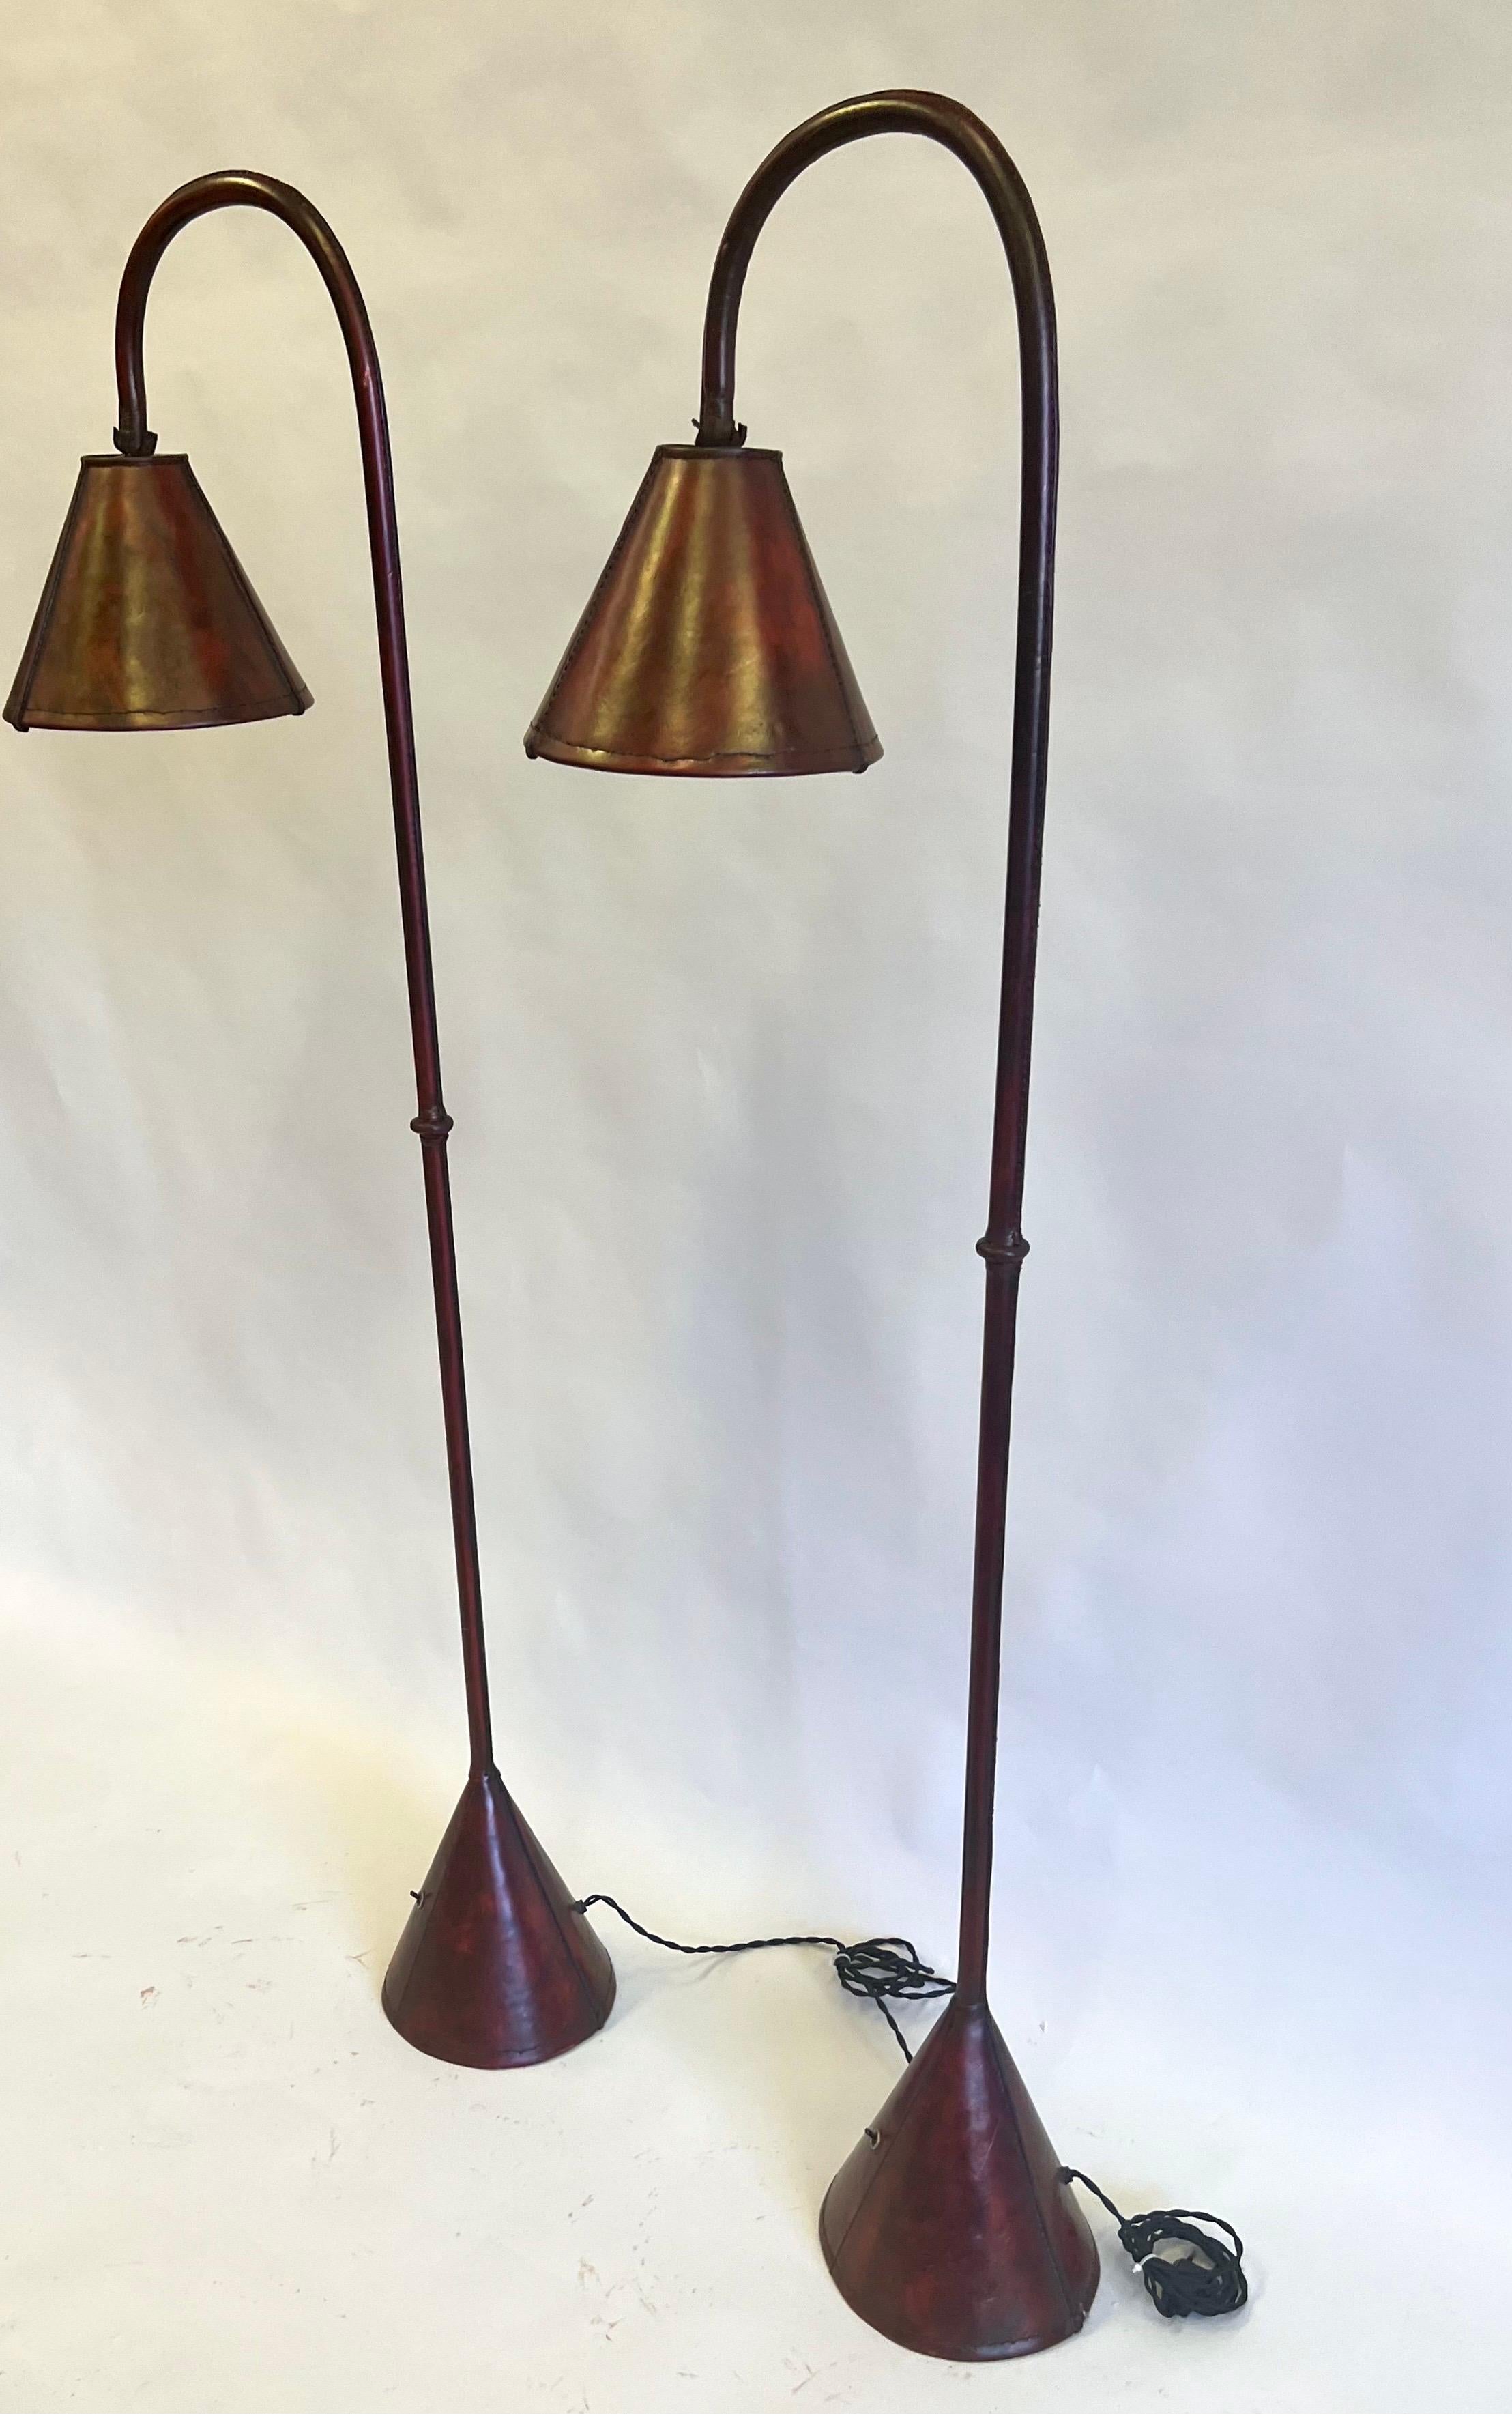 Ein elegantes Paar französischer Stehlampen aus der Mitte des Jahrhunderts in handgenähtem dunkelrotem/burgundfarbenem Leder des französischen Meisters des 20. Jahrhunderts, Jacques Adnet, um 1955. Dieses klassische, handgefertigte Modell des